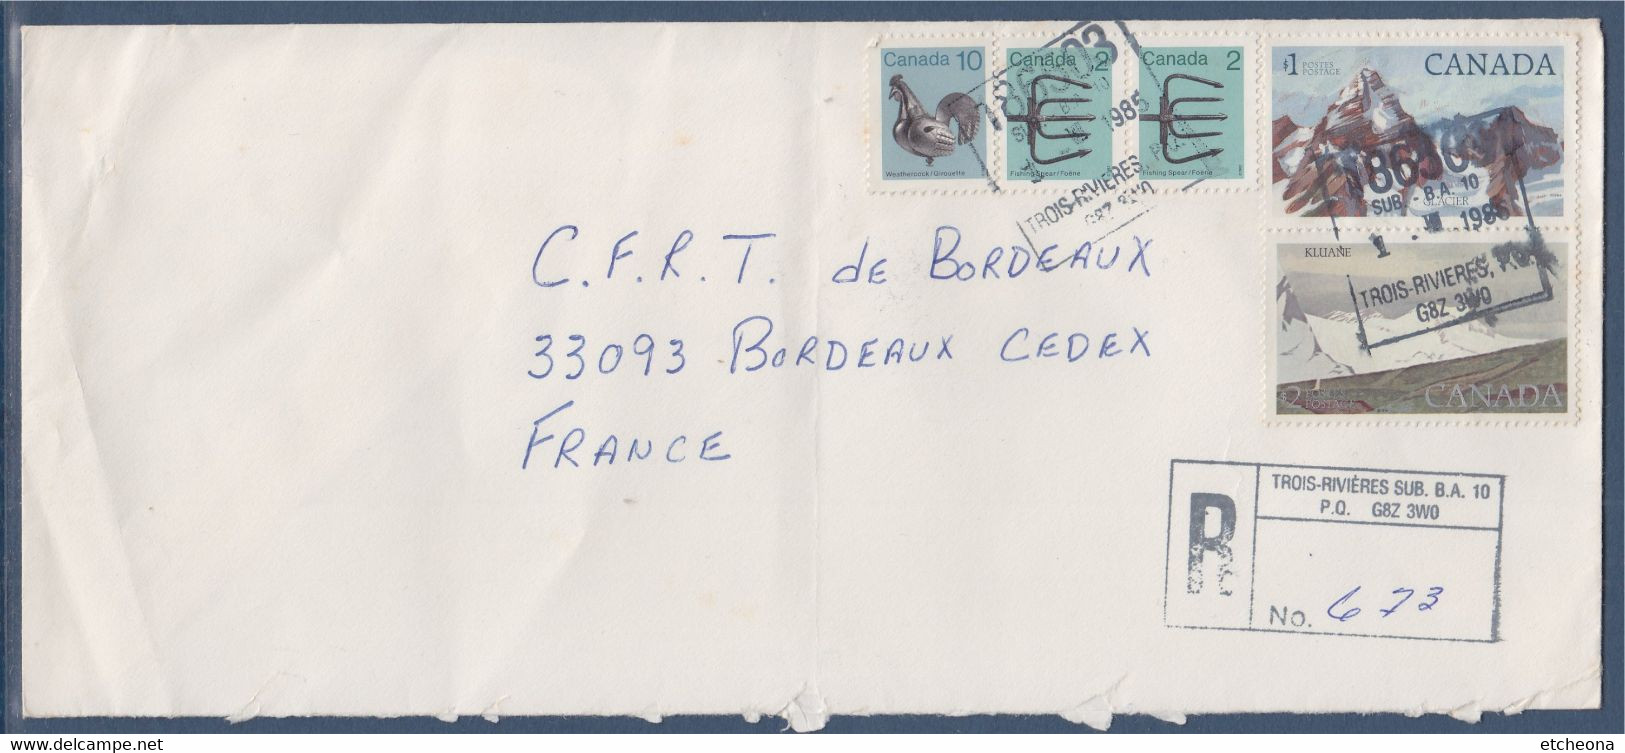 Canada Pour La France Enveloppe  Recommandée De Trois-Rivières 1.VIII.1985 Avec 5 Timbres - Registration & Officially Sealed